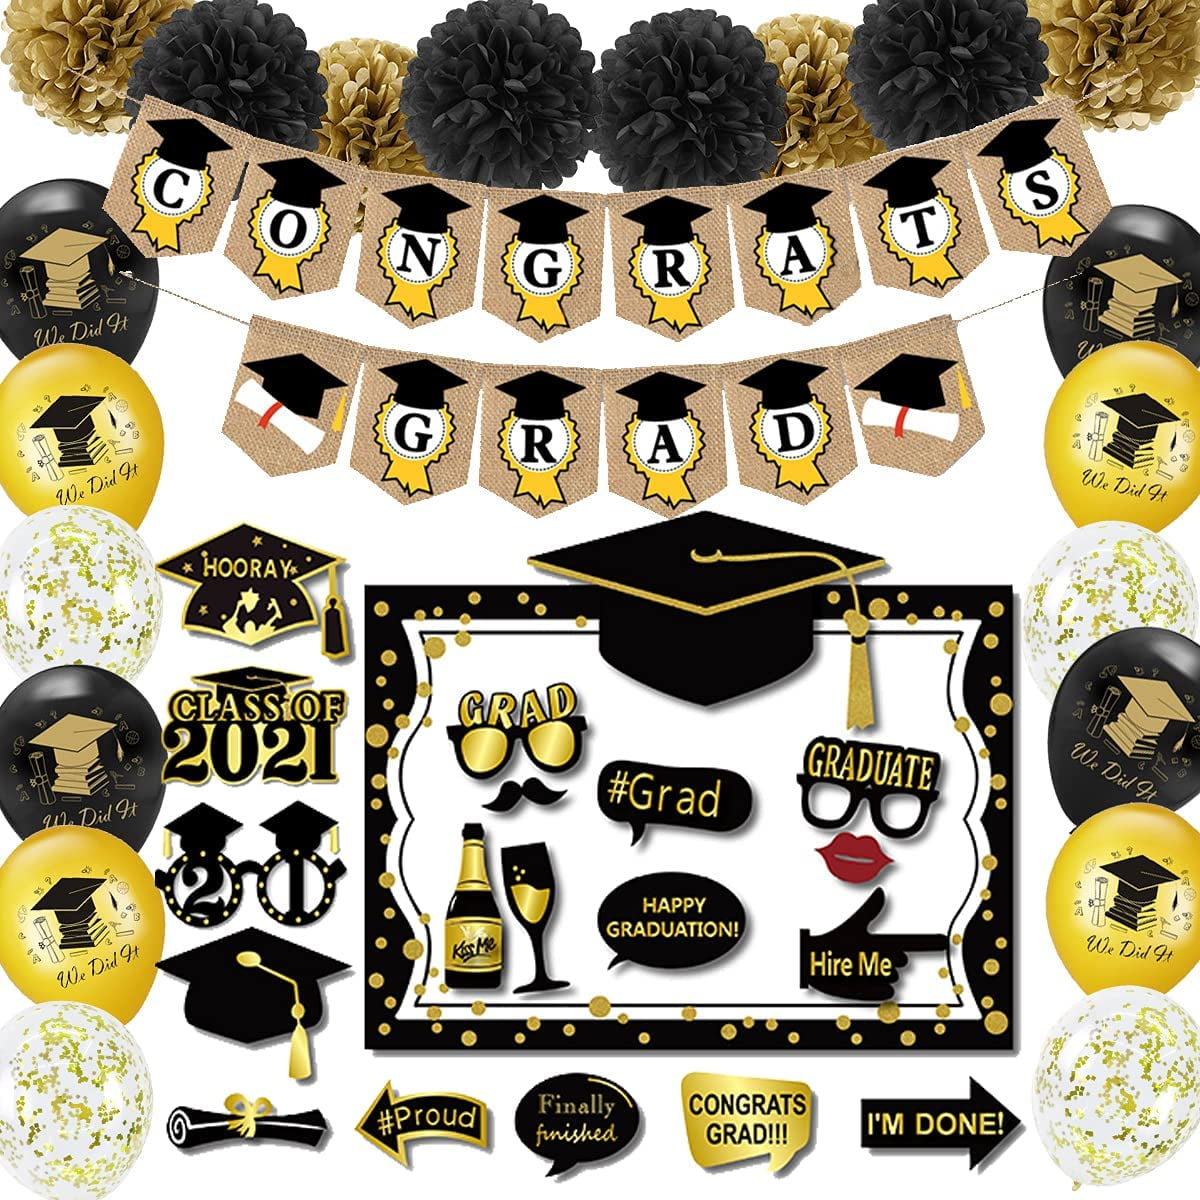 Black and Gold Graduation Decorations 2021 including Congrats Grad ...